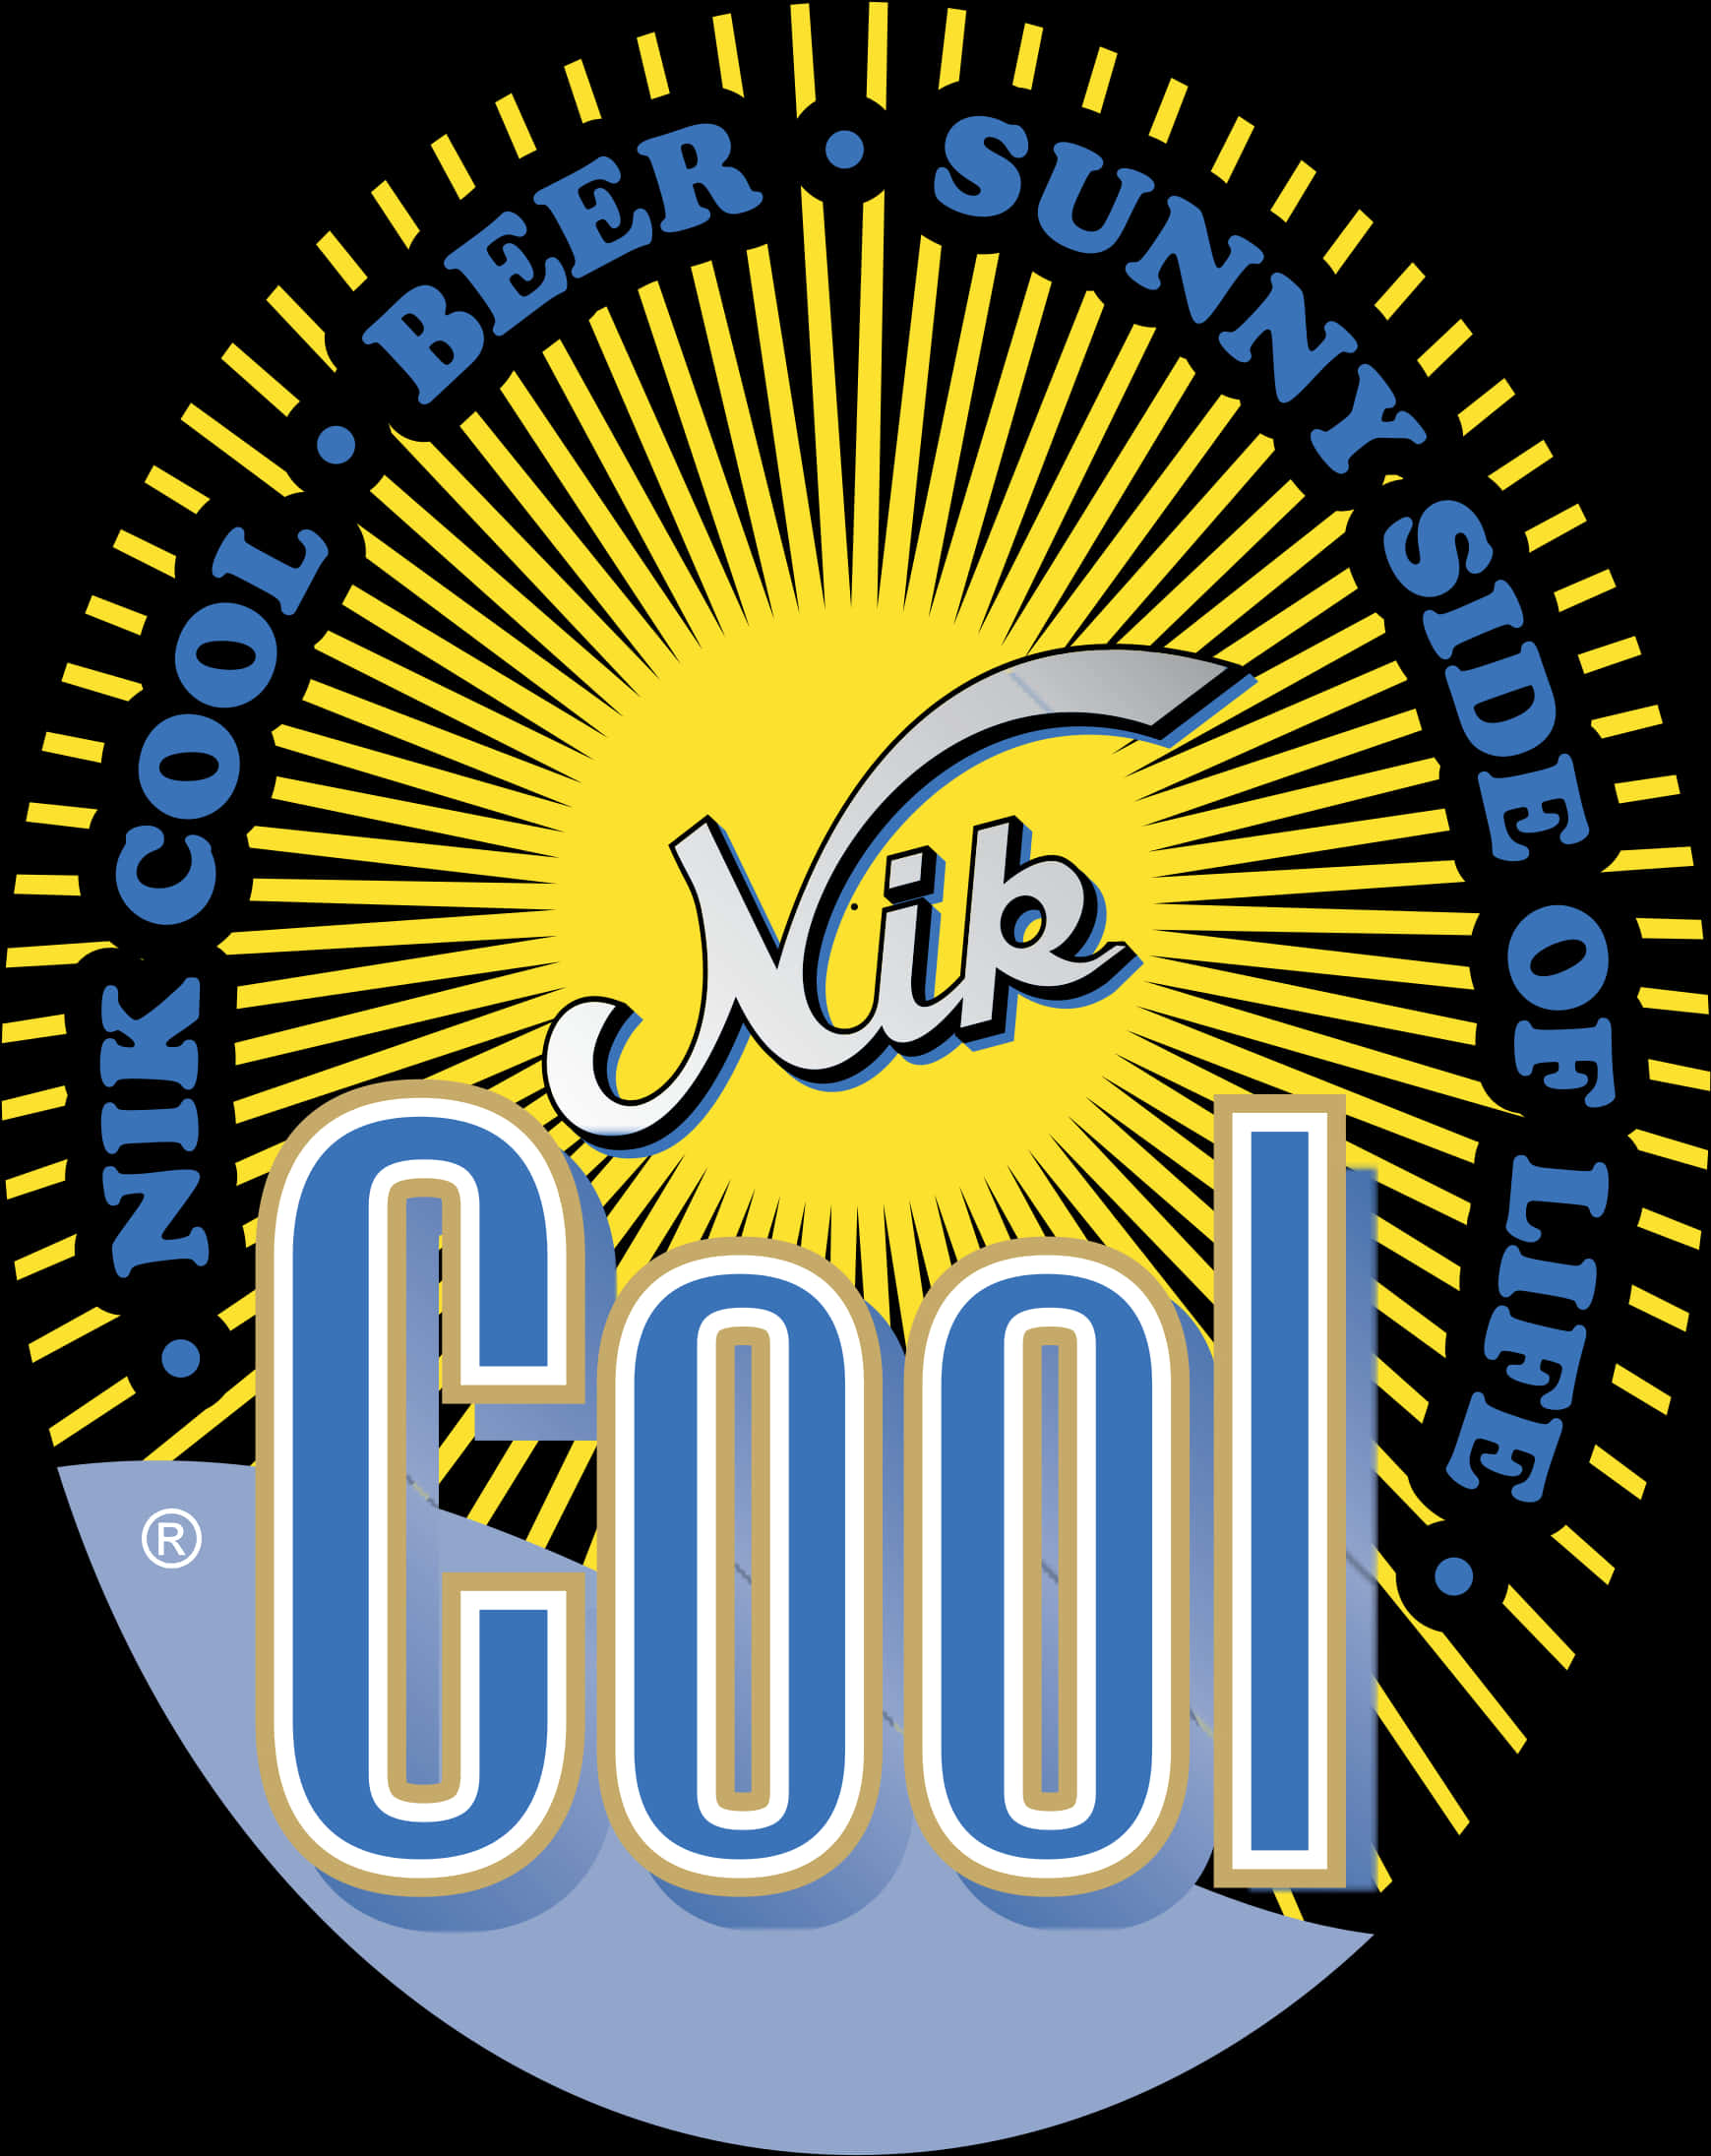 Nik Cool Logo